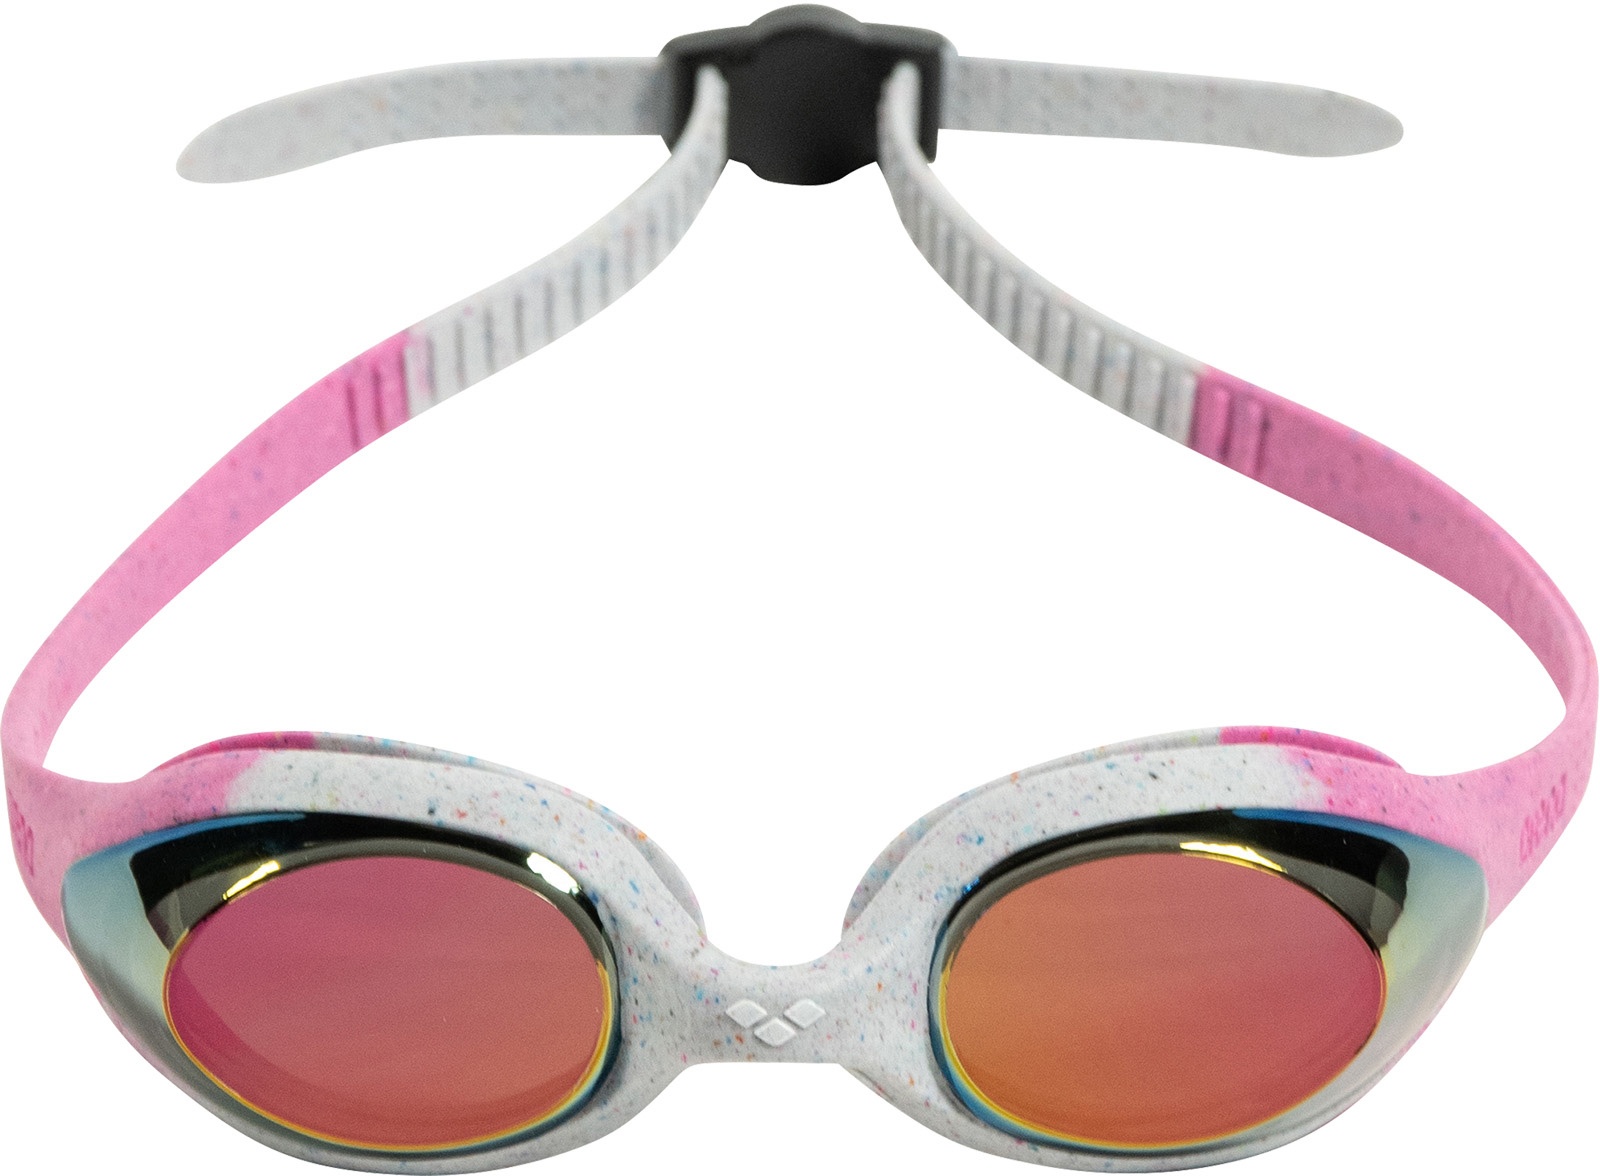 Dětské plavecké brýle